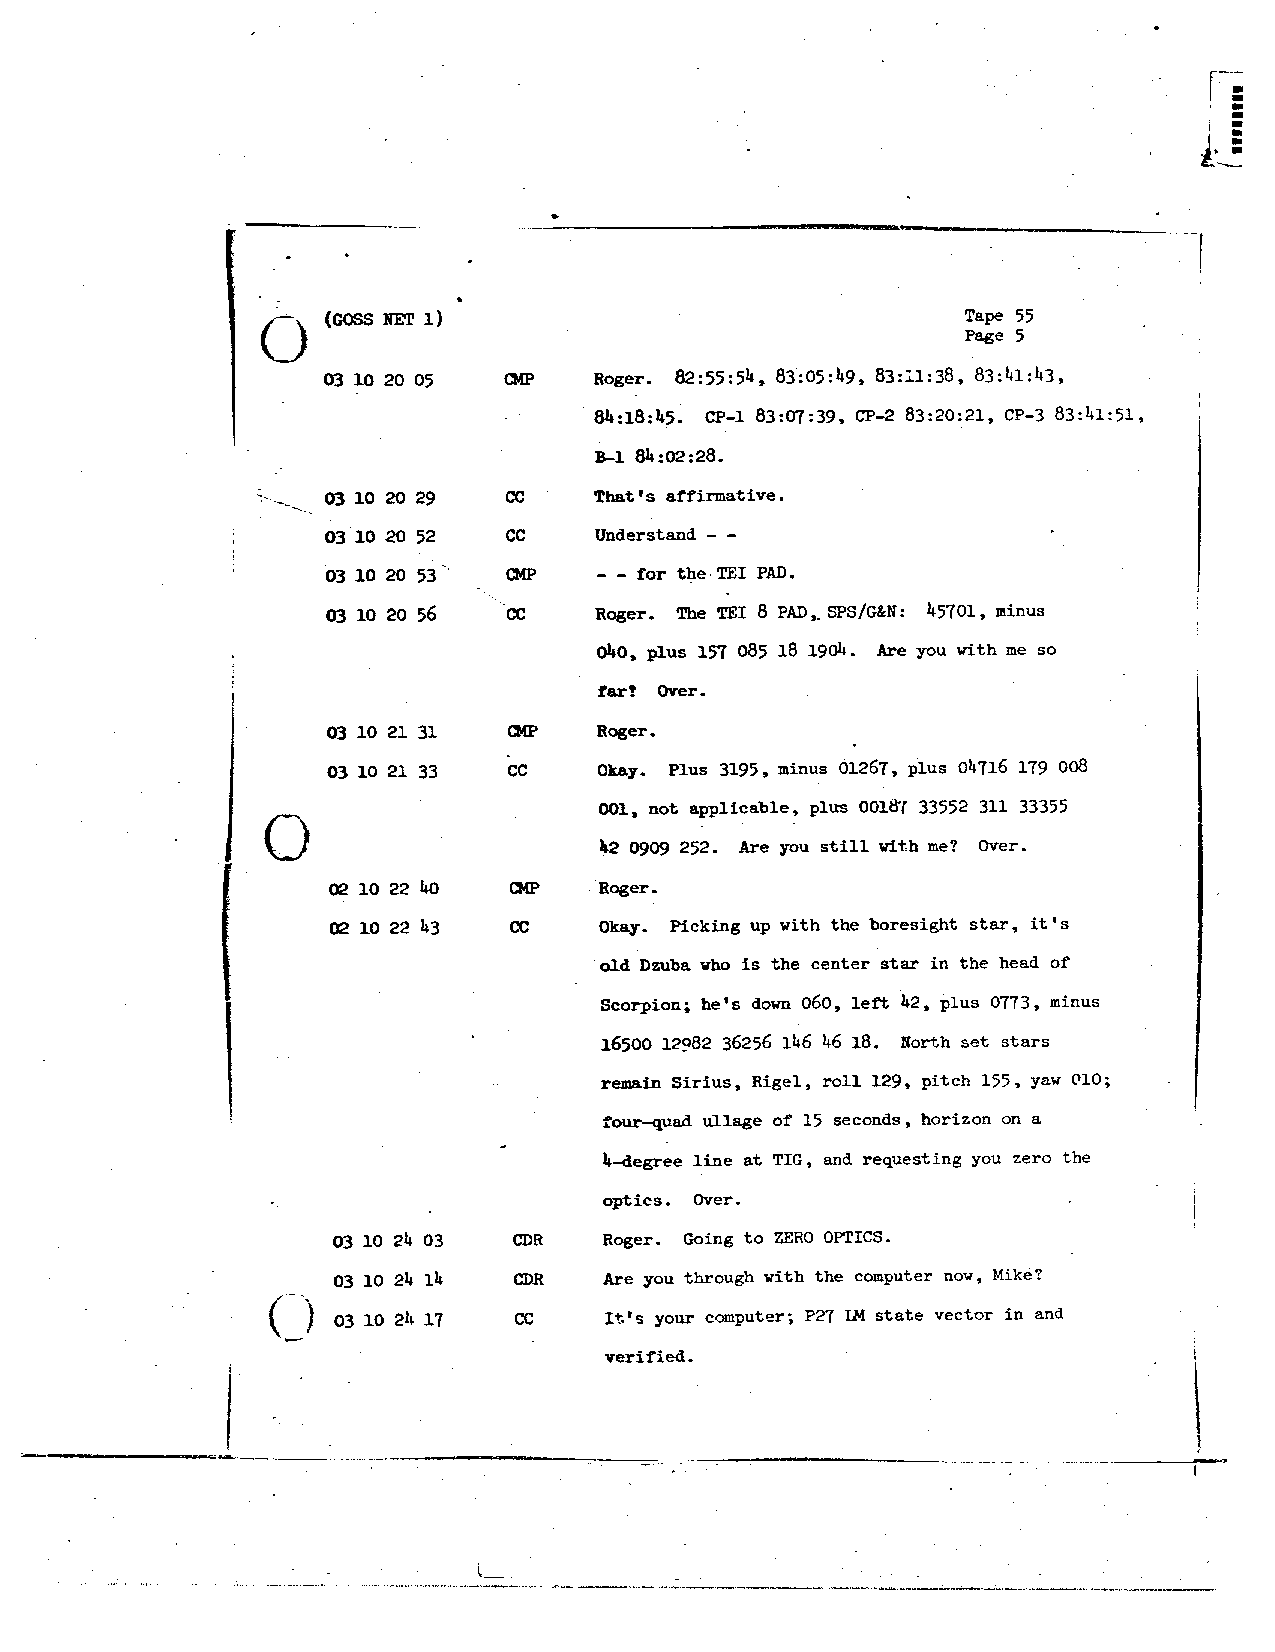 Page 440 of Apollo 8’s original transcript